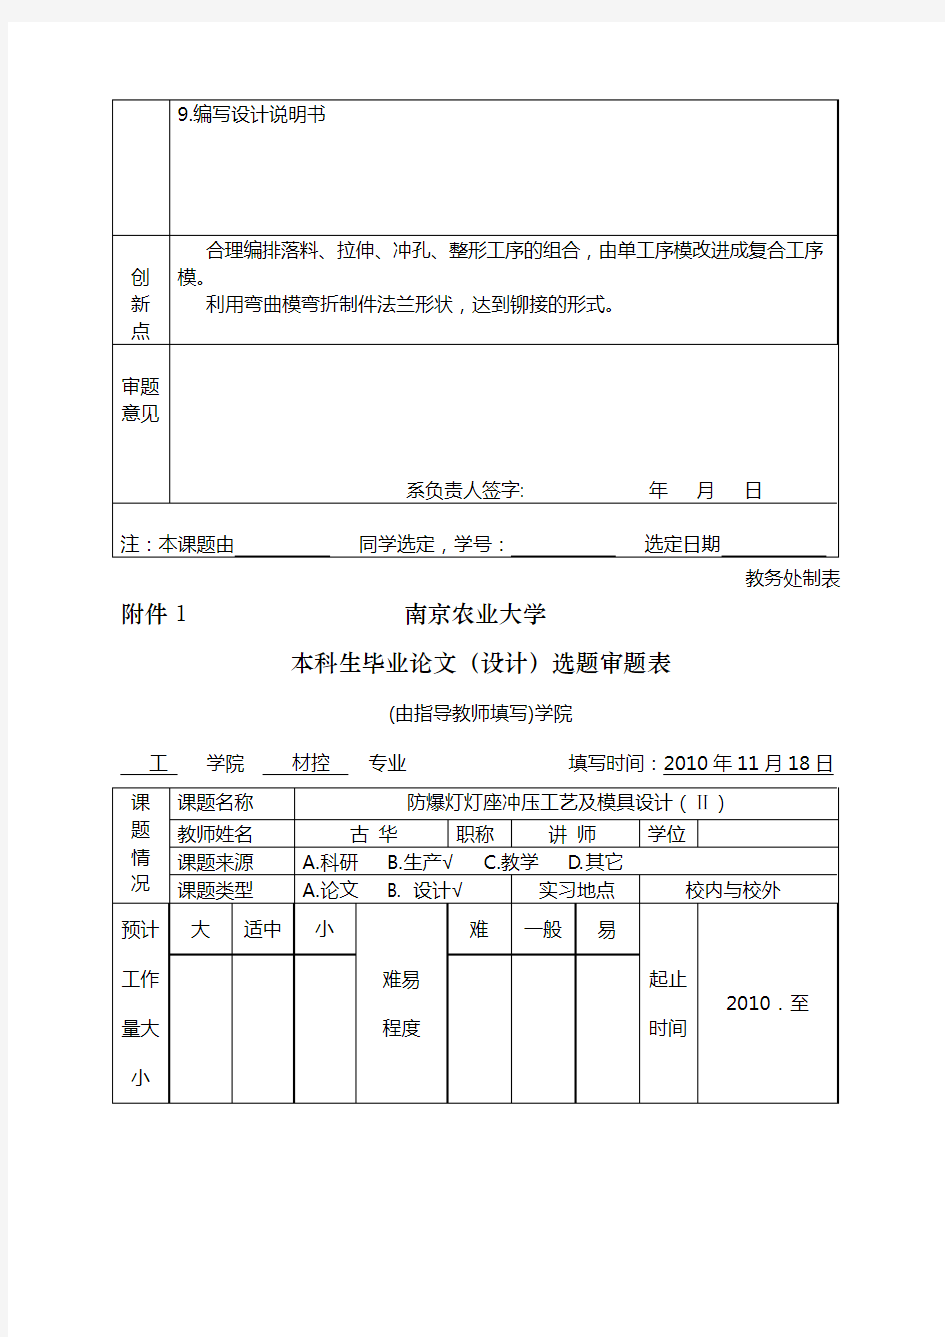 1南京农业大学本科生毕业论文(设计)选题审题表